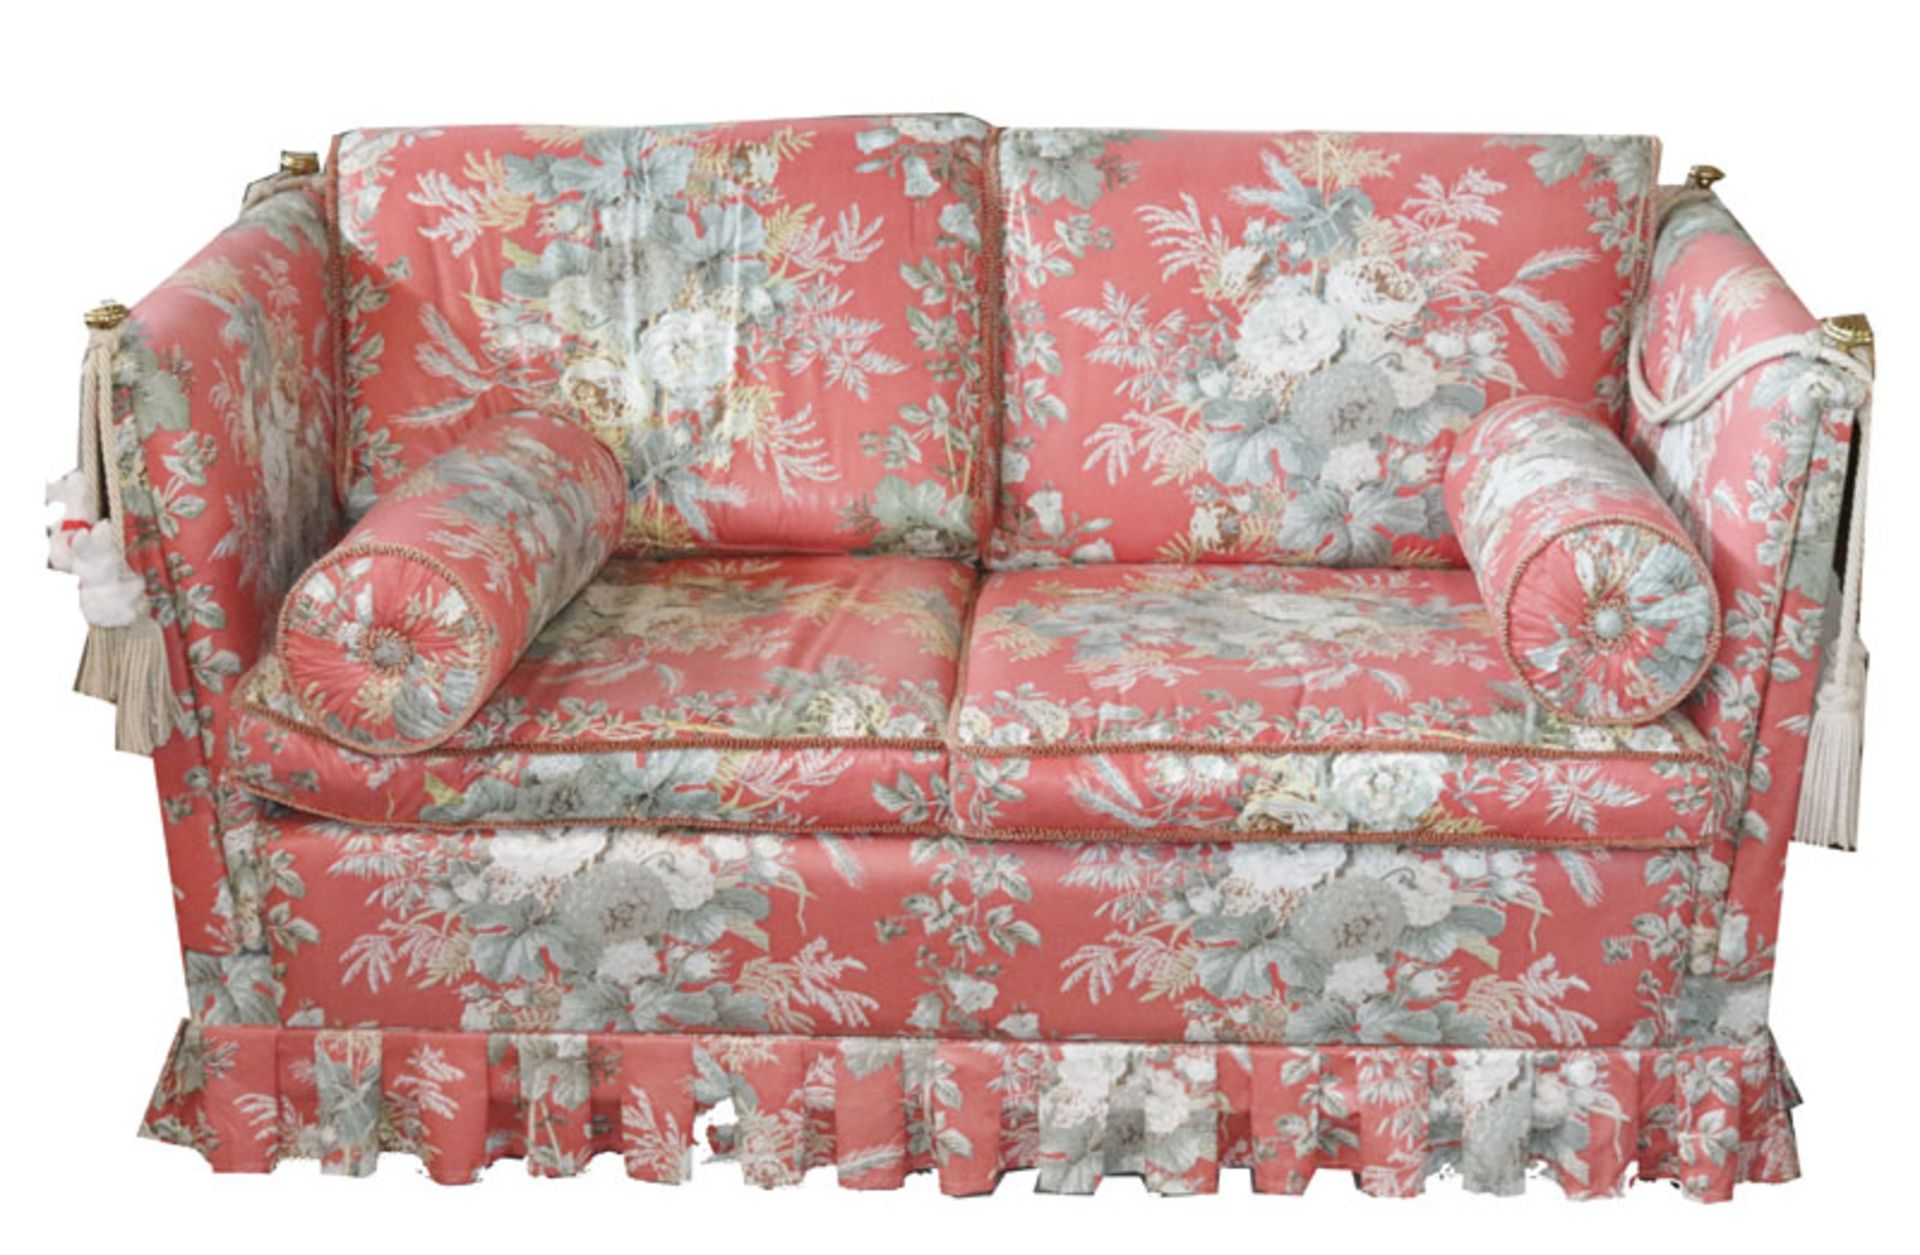 Sofa, 2-sitzer, gepolstert und rot mit asiatischem Dekor bezogen, H 86 cm, T 153 cm, T 53 cm, gut